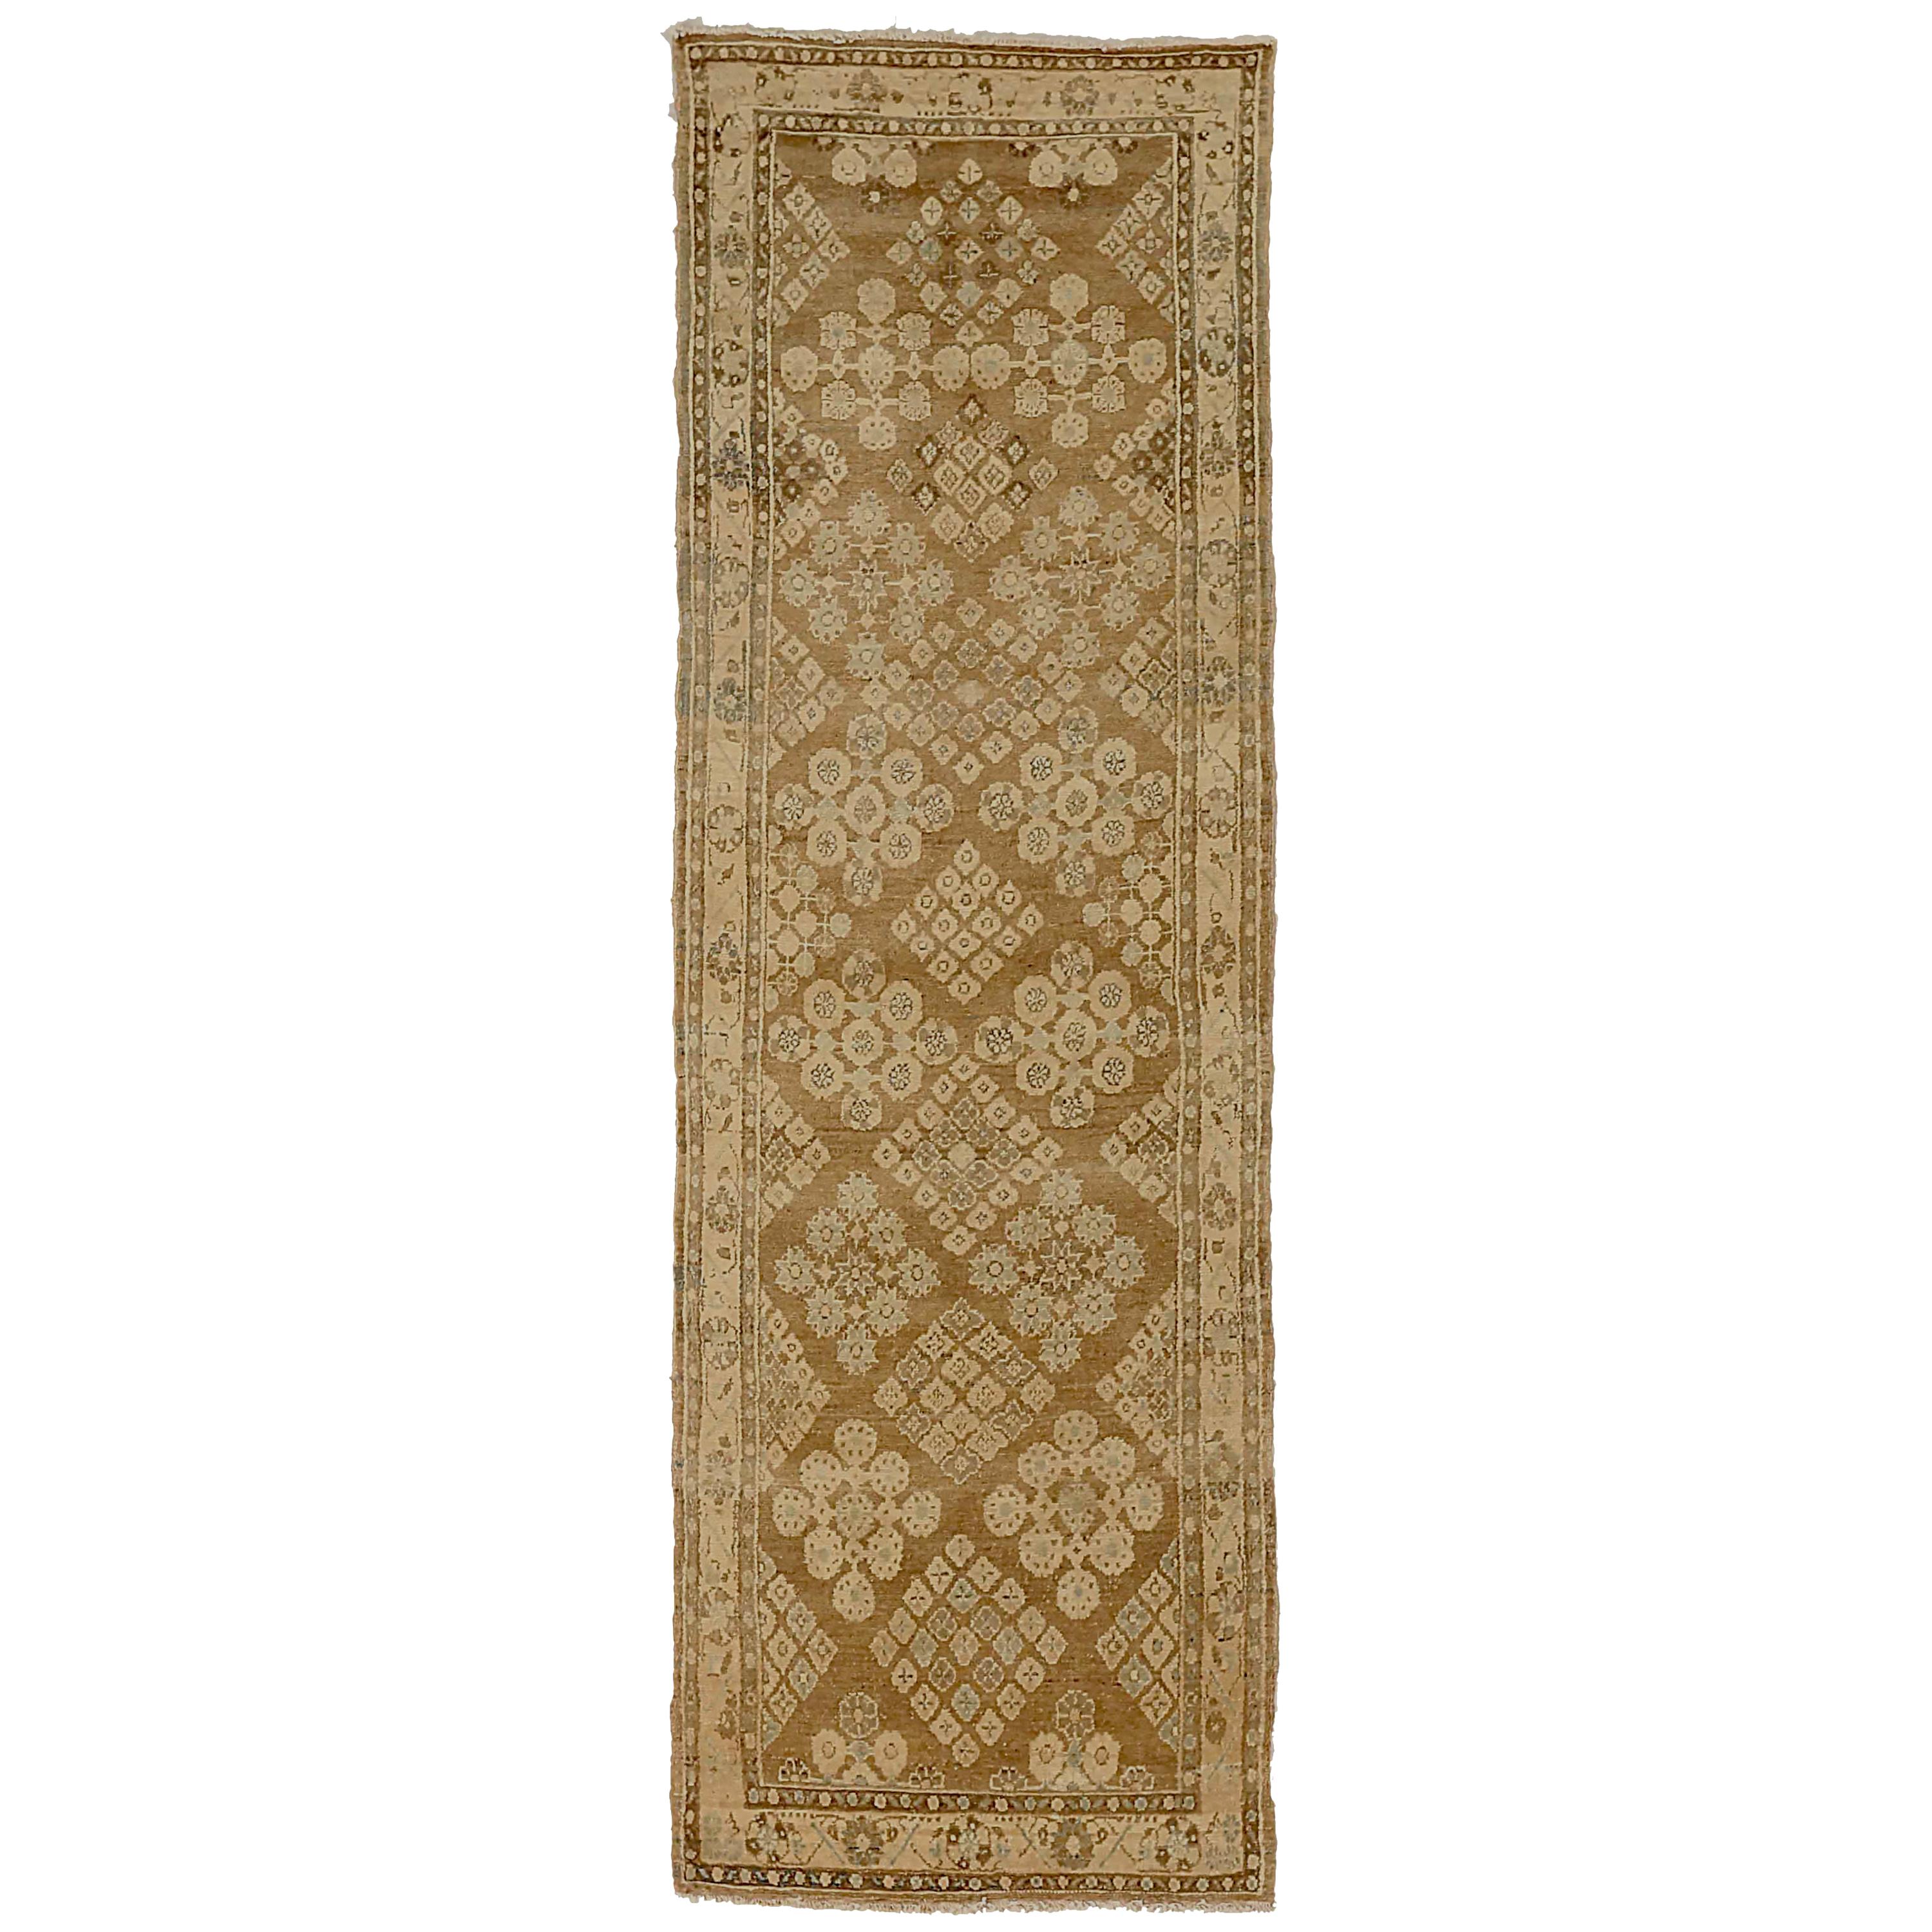 Tapis de couloir persan ancien Malayer avec détails floraux sur fond brun